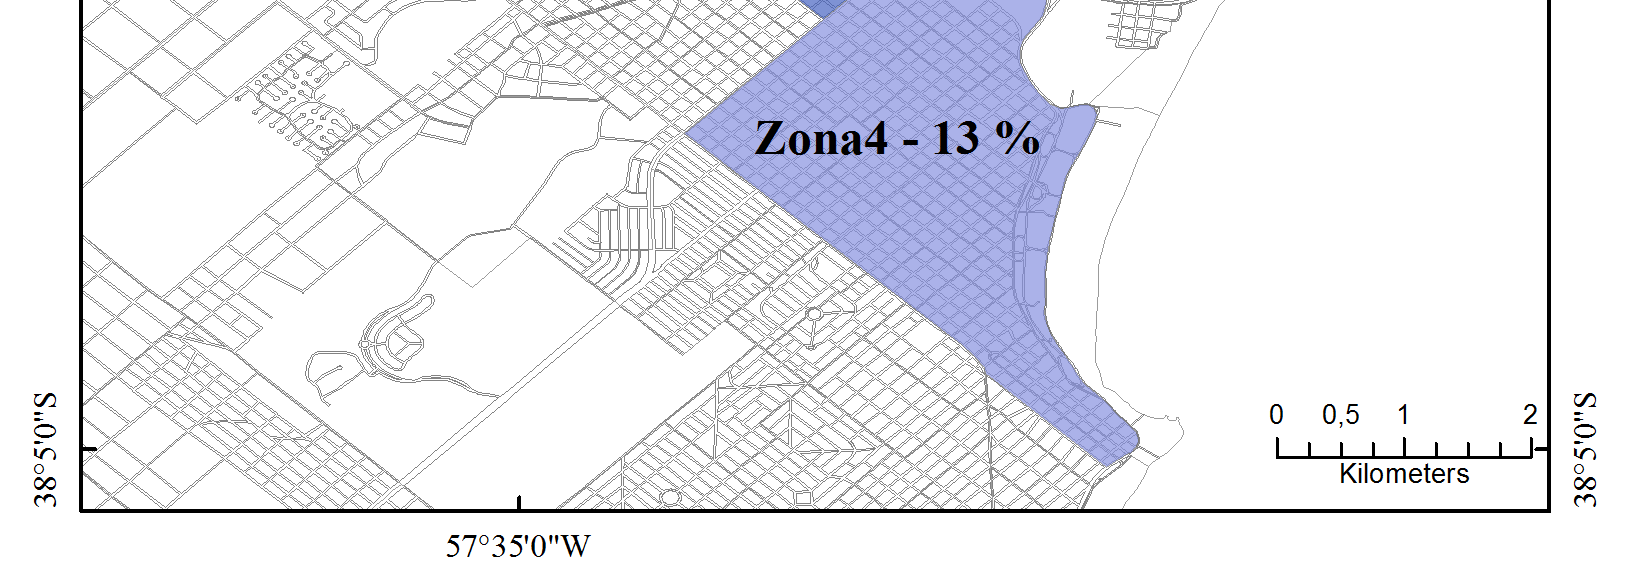 Dispersión según zonas Se dividió la ciudad en 8 zonas muy amplias y dentro de cada una de ellas se seleccionaron 4 puntos de relevamiento: dos supermercados y dos despensas.